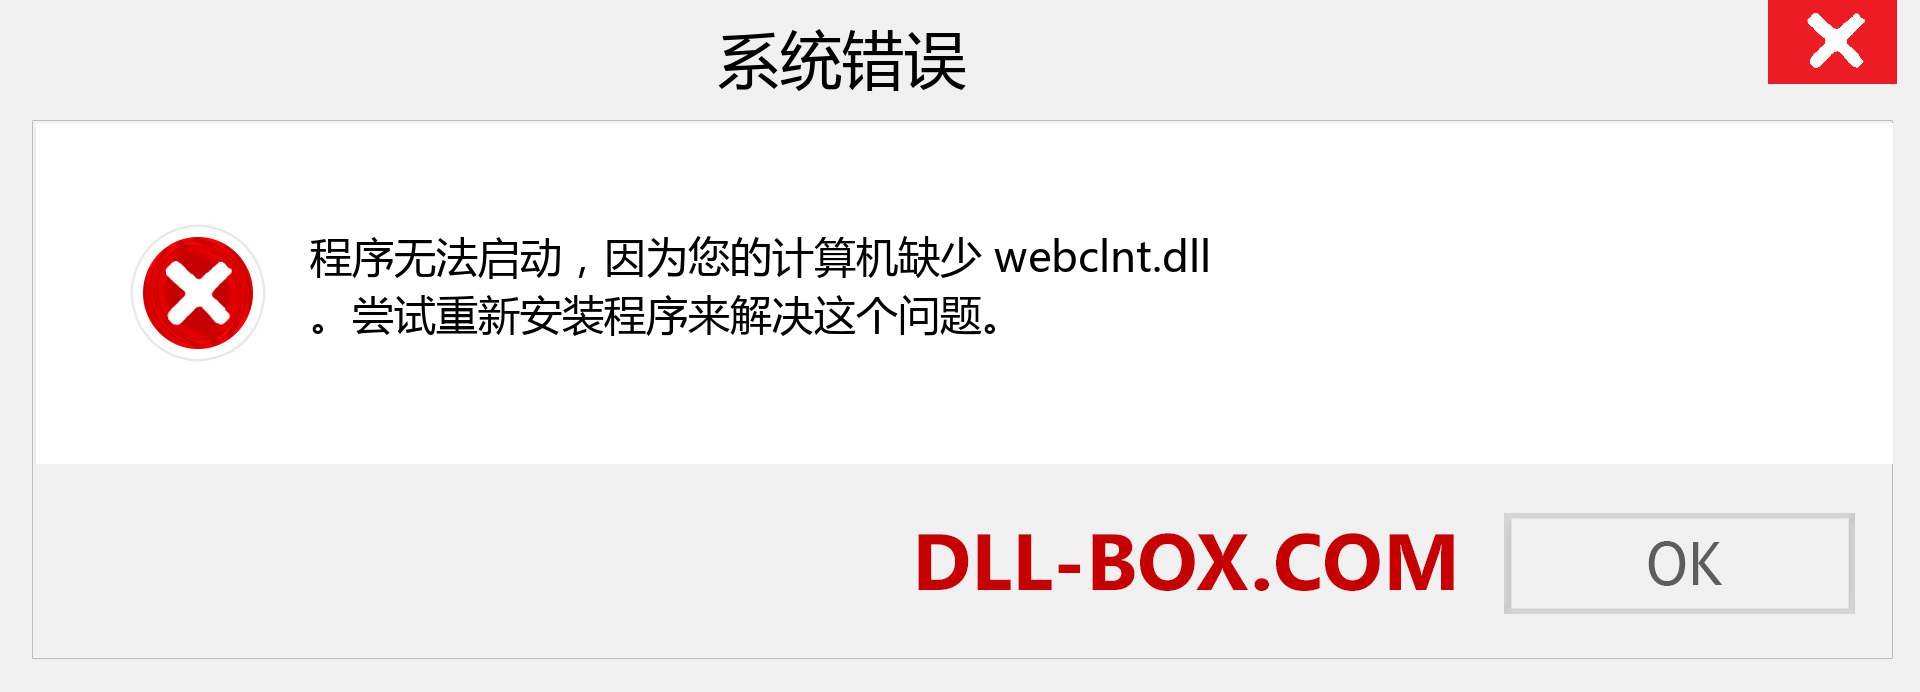 webclnt.dll 文件丢失？。 适用于 Windows 7、8、10 的下载 - 修复 Windows、照片、图像上的 webclnt dll 丢失错误